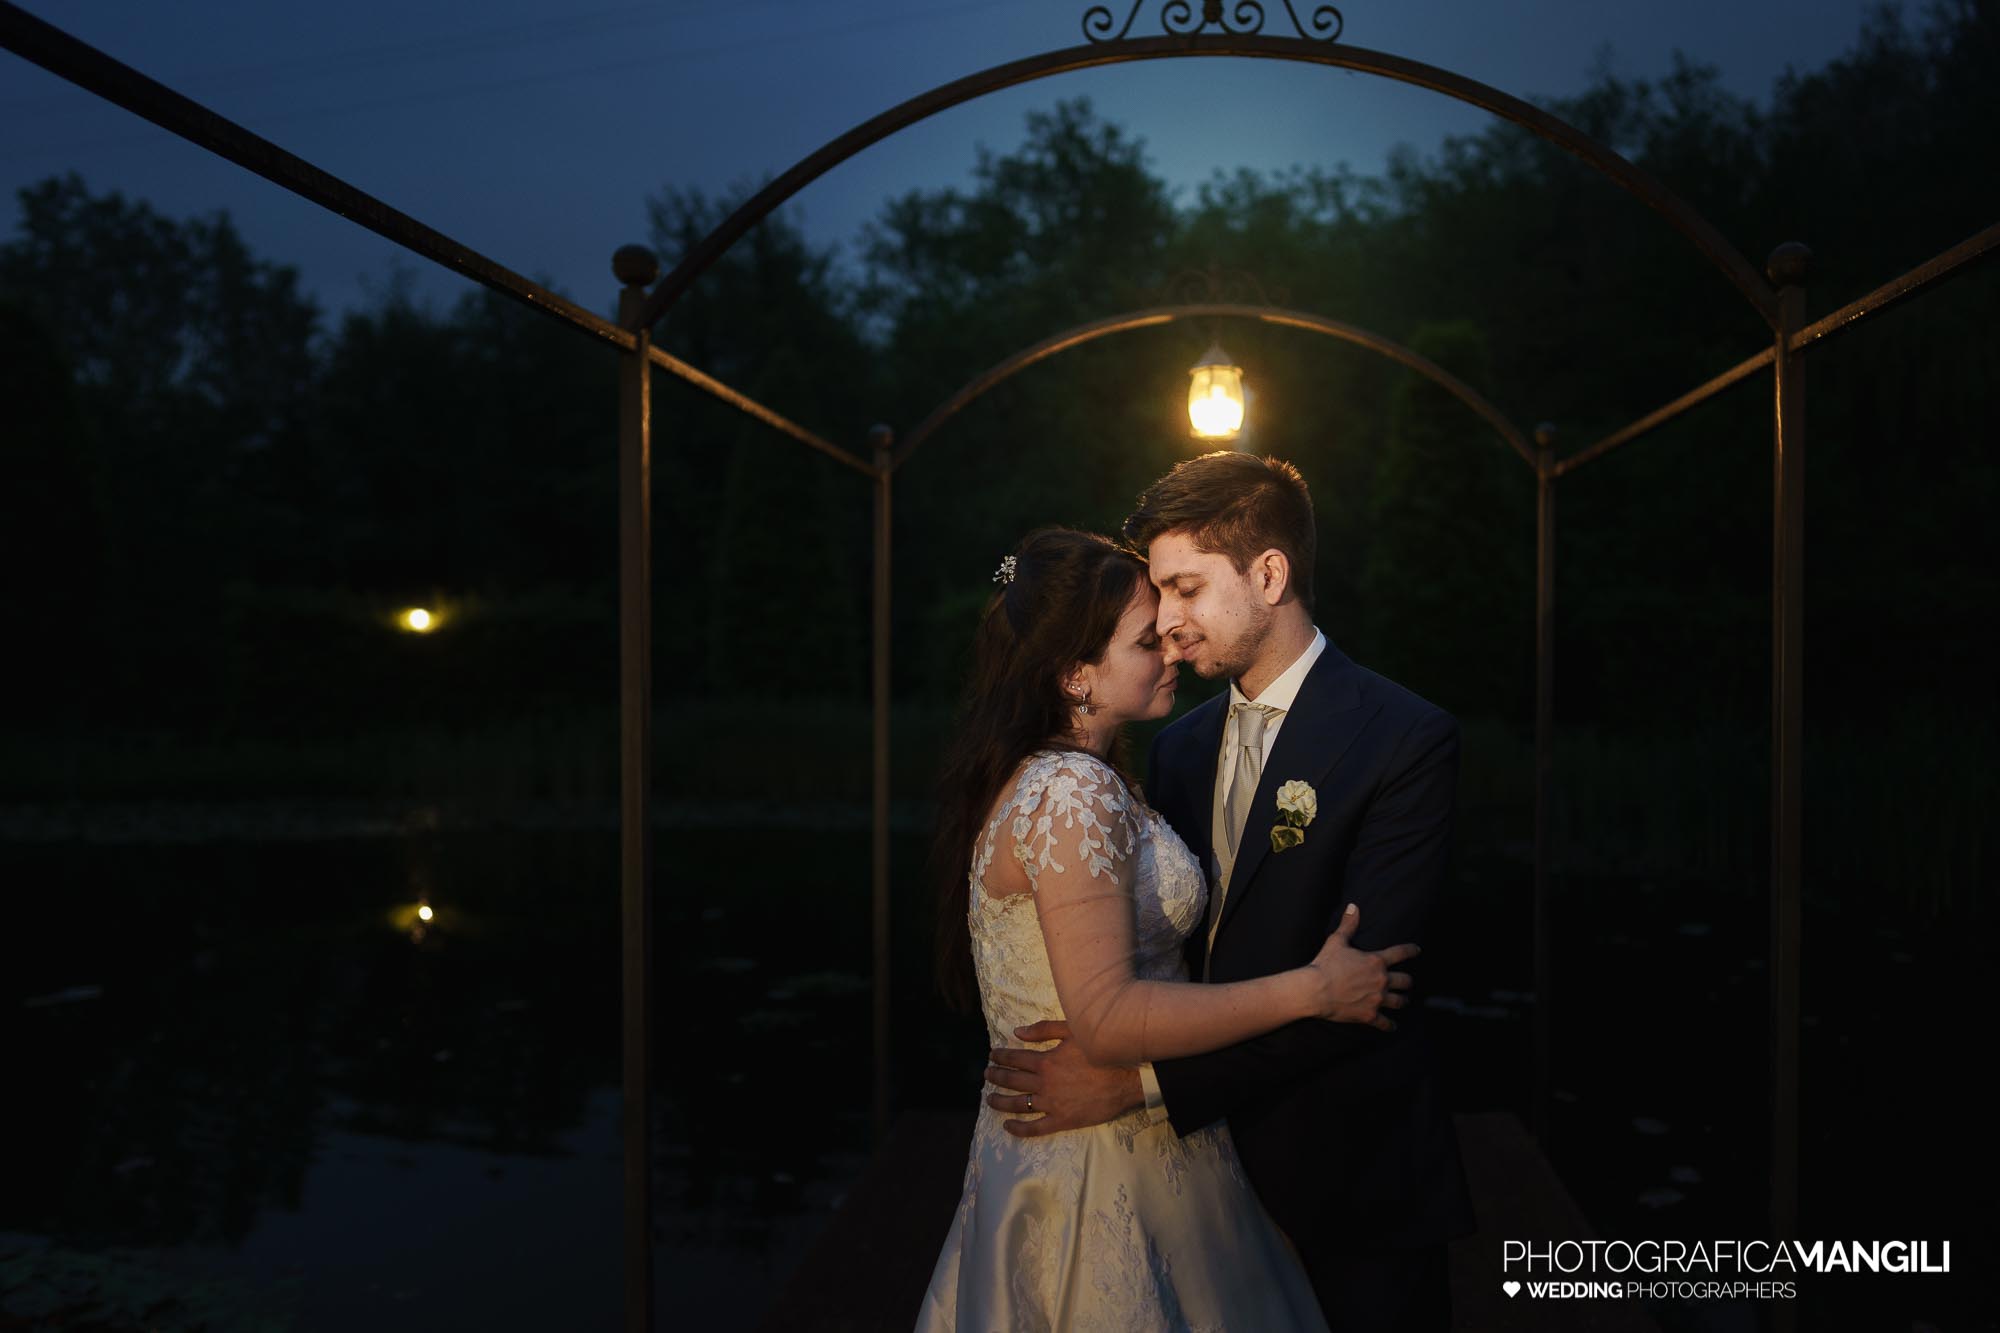 065 foto nozze wedding reportage ritratto romantico sposi il fontanile gandosso bergamo chiara oliviero